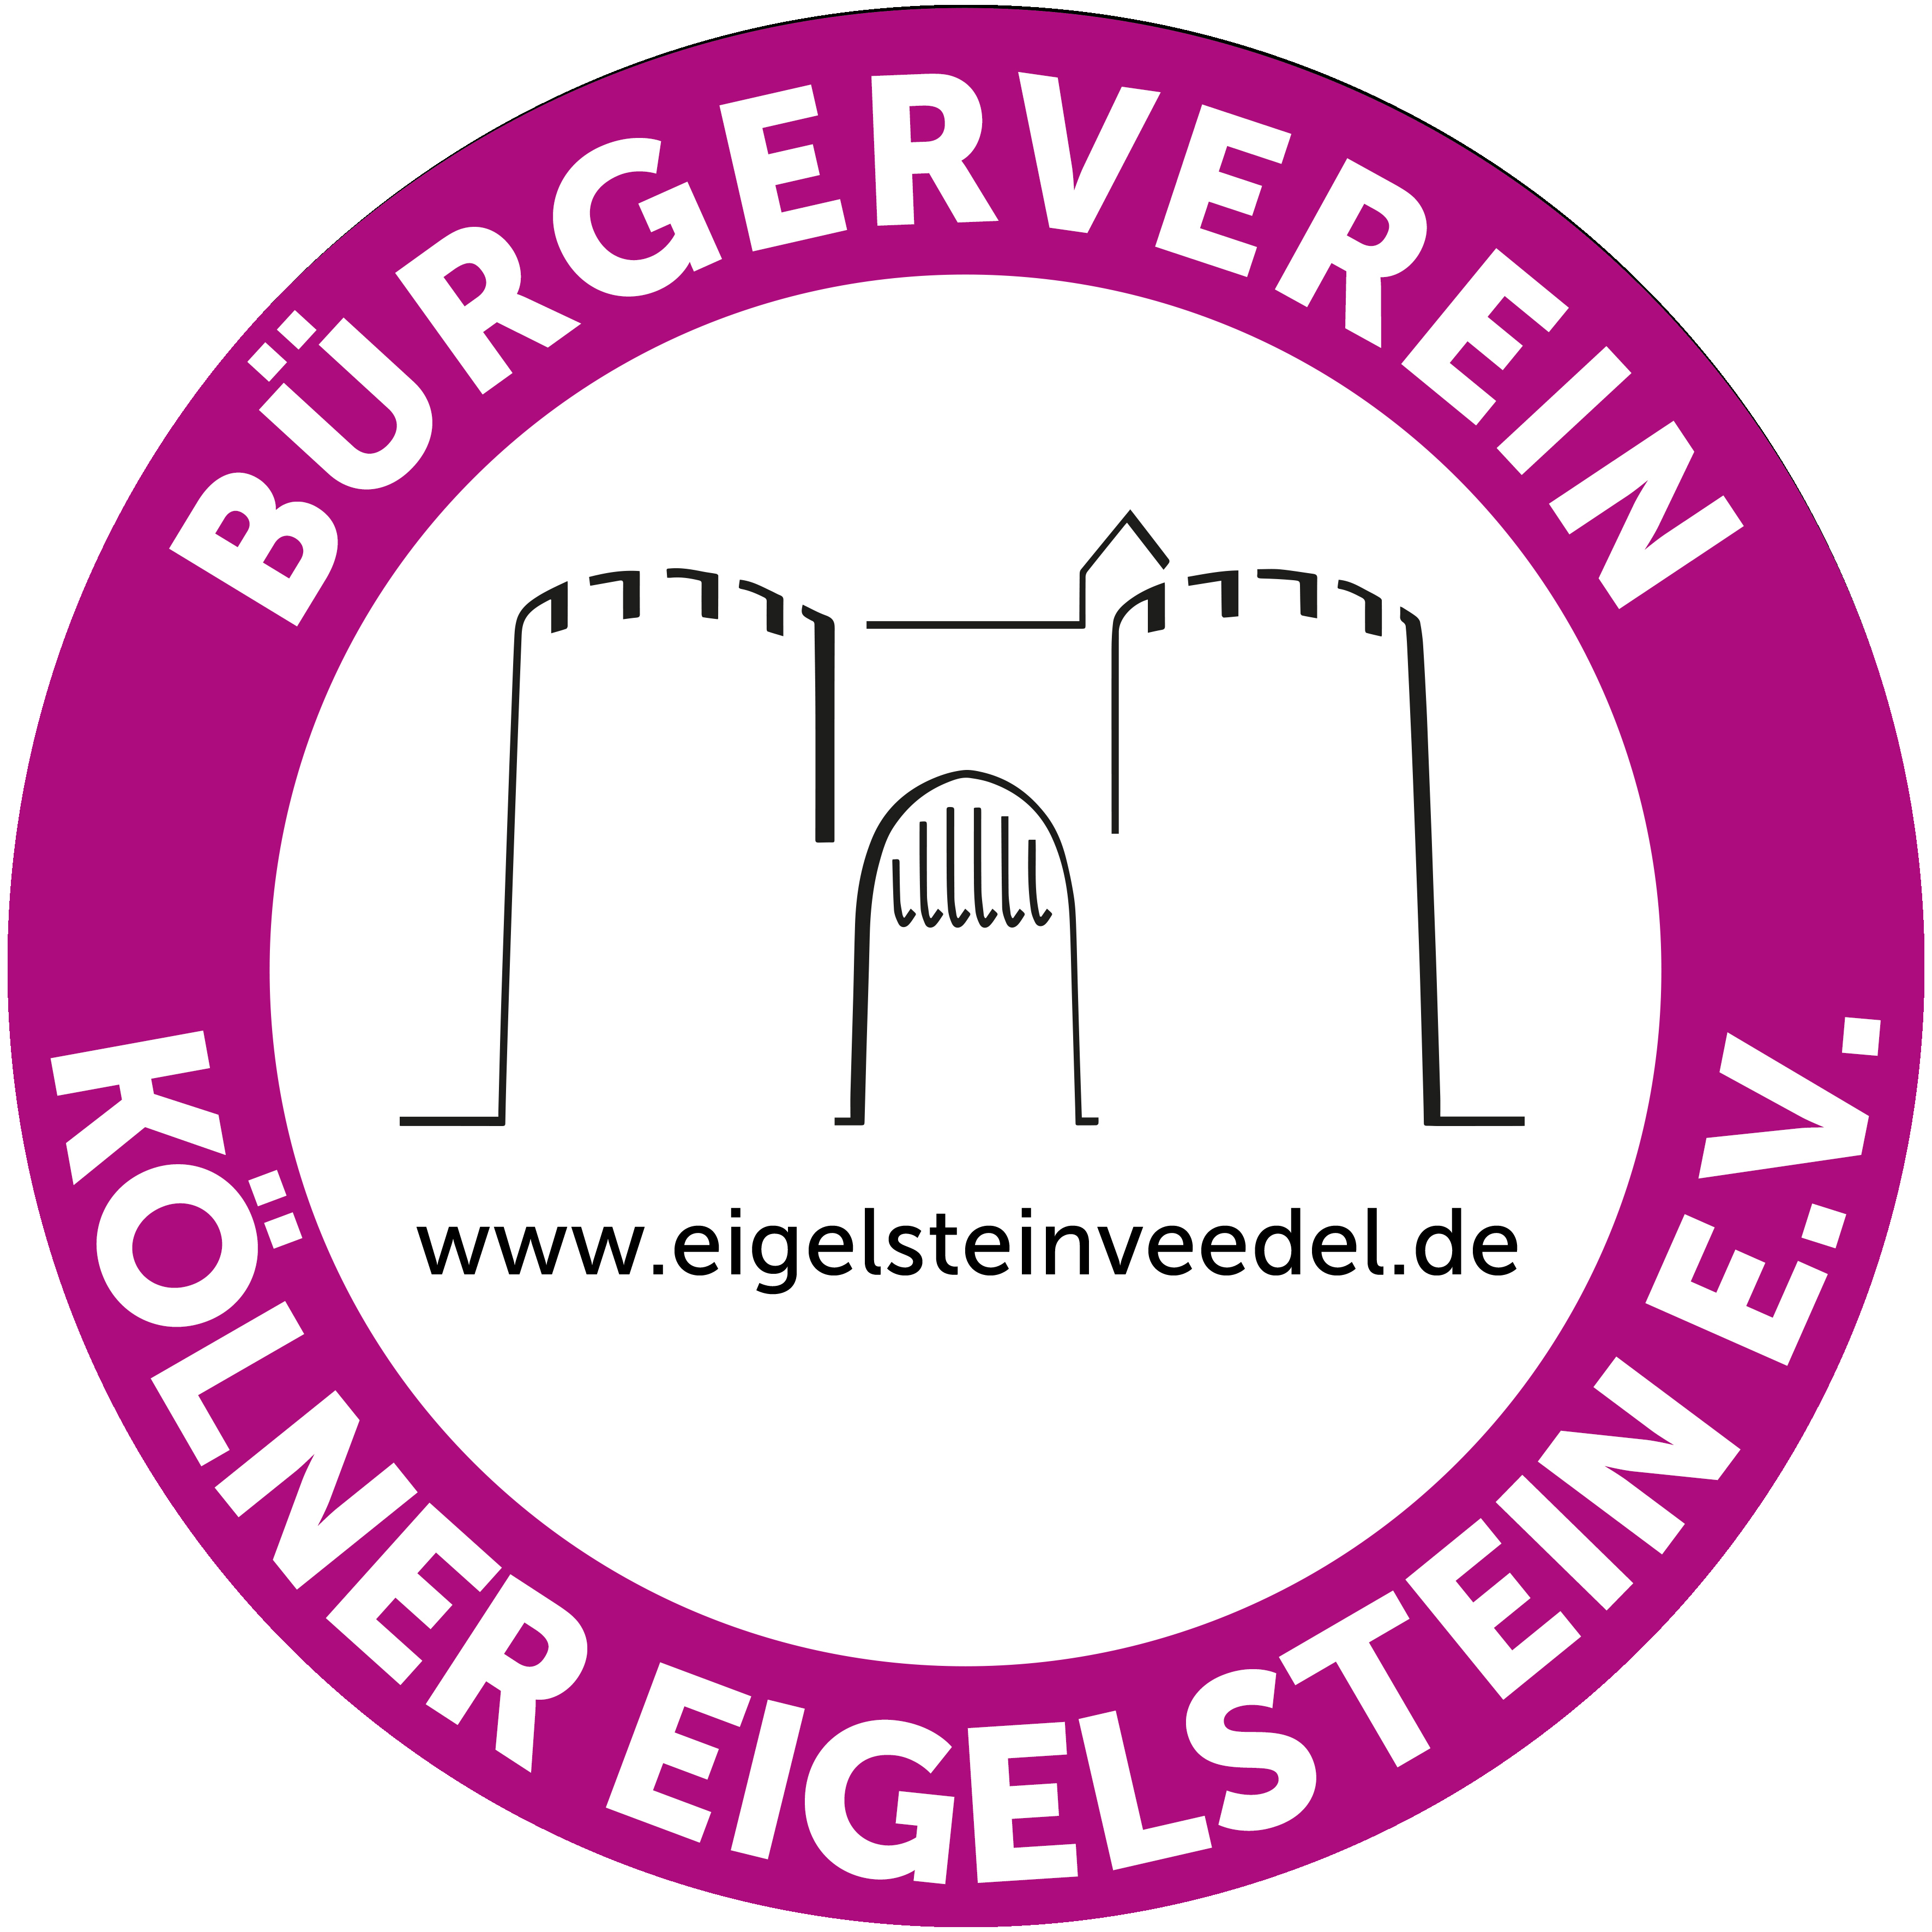 Buergerverein Koelner Eigelstein e.V.